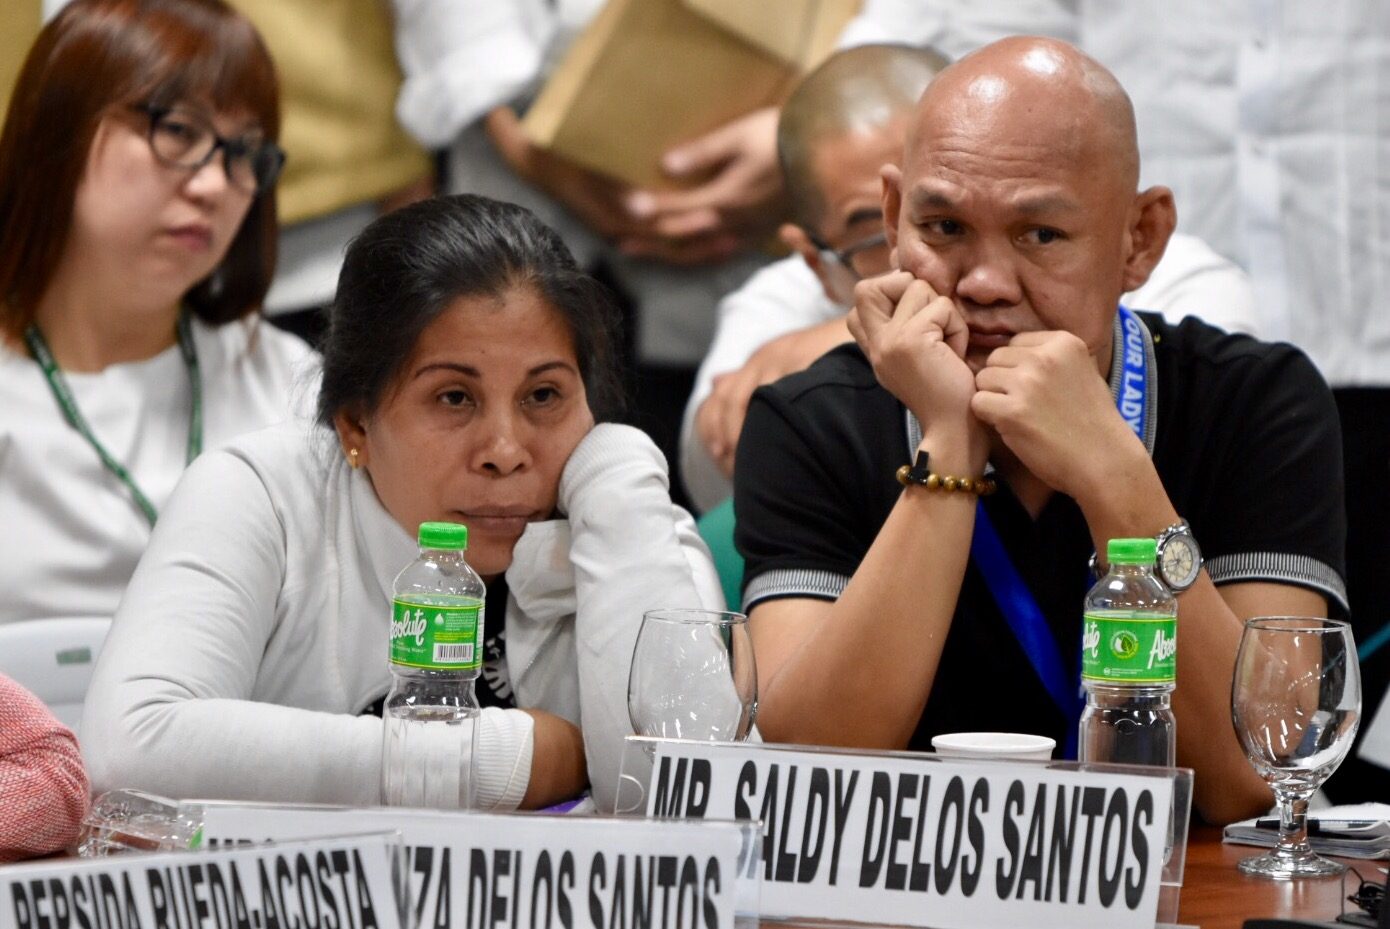 Parents confront Kian delos Santos’ killers: ‘Ama ka rin’